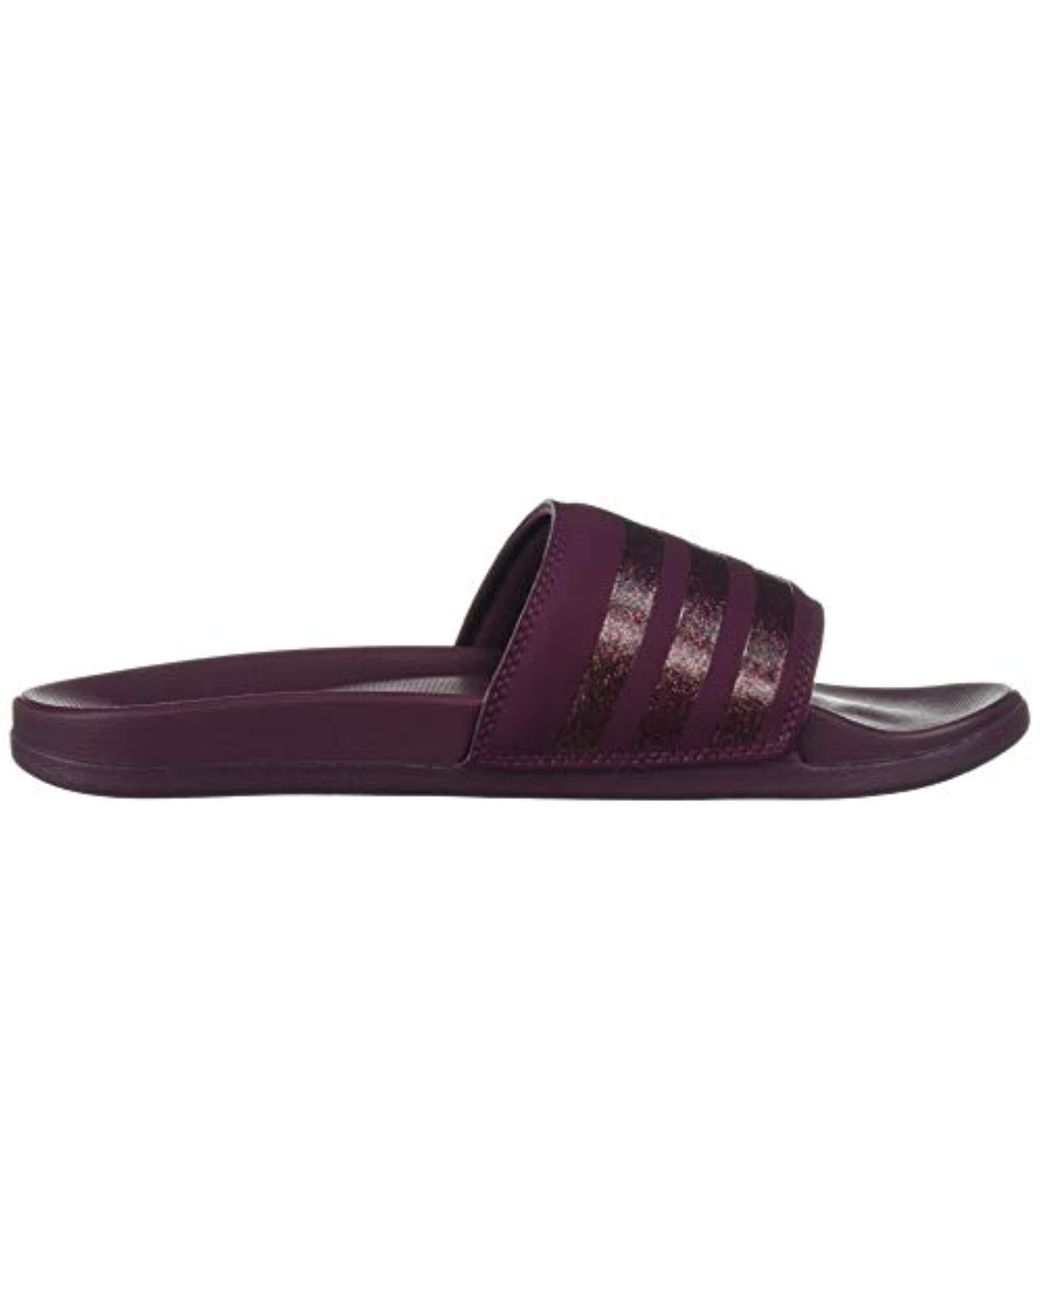 adidas Synthetic Adilette Comfort Slip-on Swim Slides in Maroon/Maroon/ Maroon (Purple) | Lyst